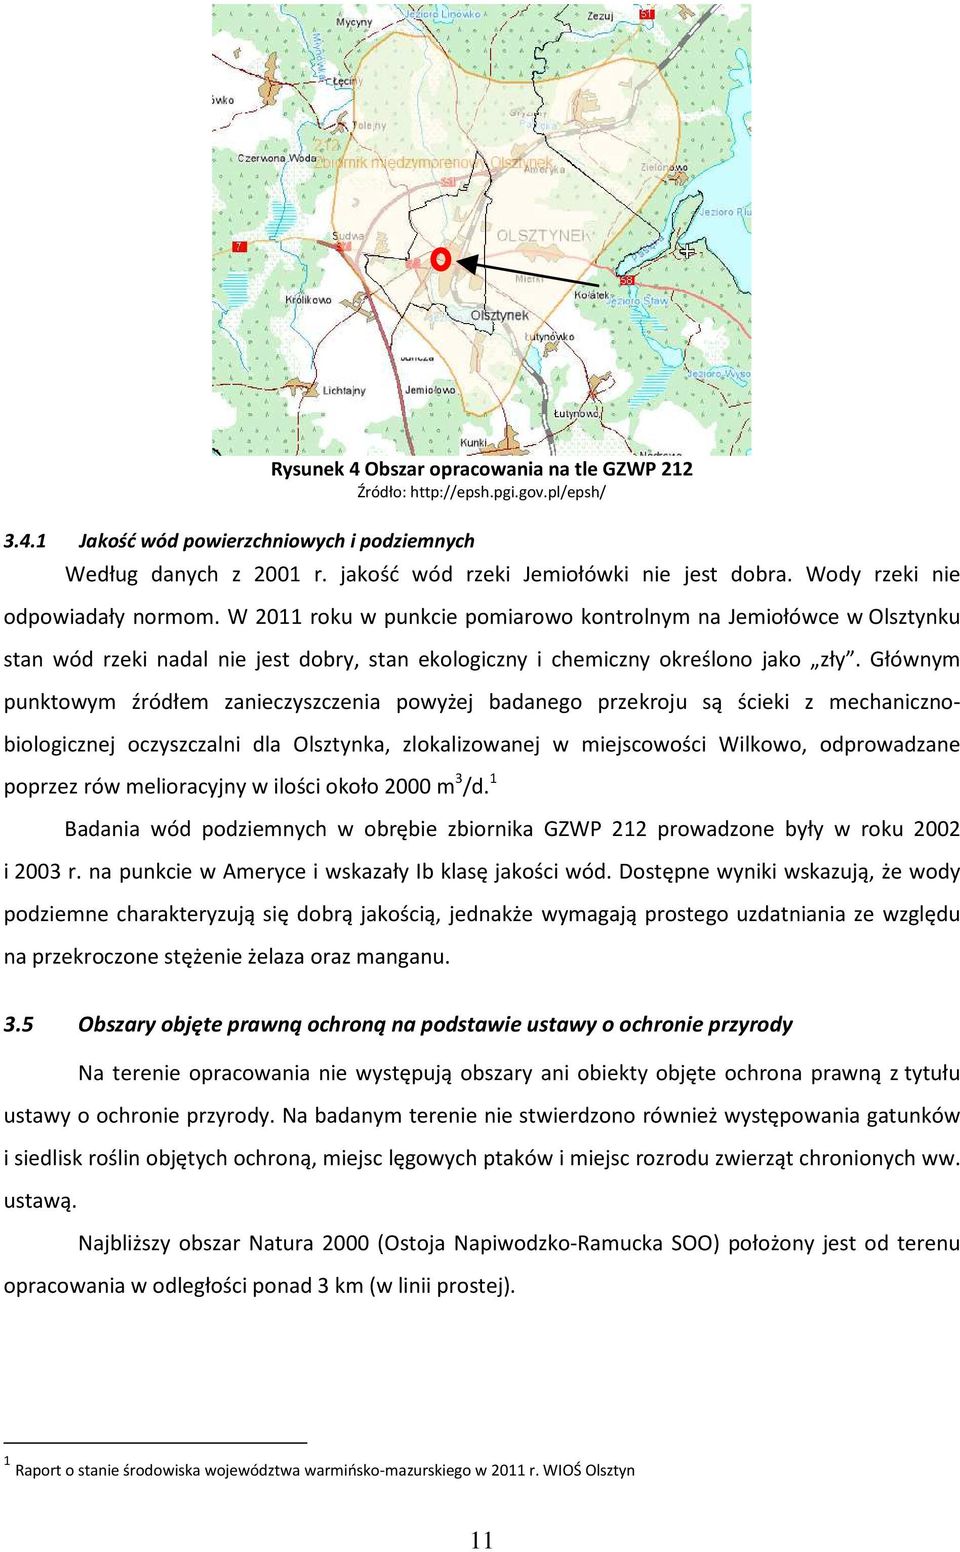 Głównym punktowym źródłem zanieczyszczenia powyżej badanego przekroju są ścieki z mechanicznobiologicznej oczyszczalni dla Olsztynka, zlokalizowanej w miejscowości Wilkowo, odprowadzane poprzez rów